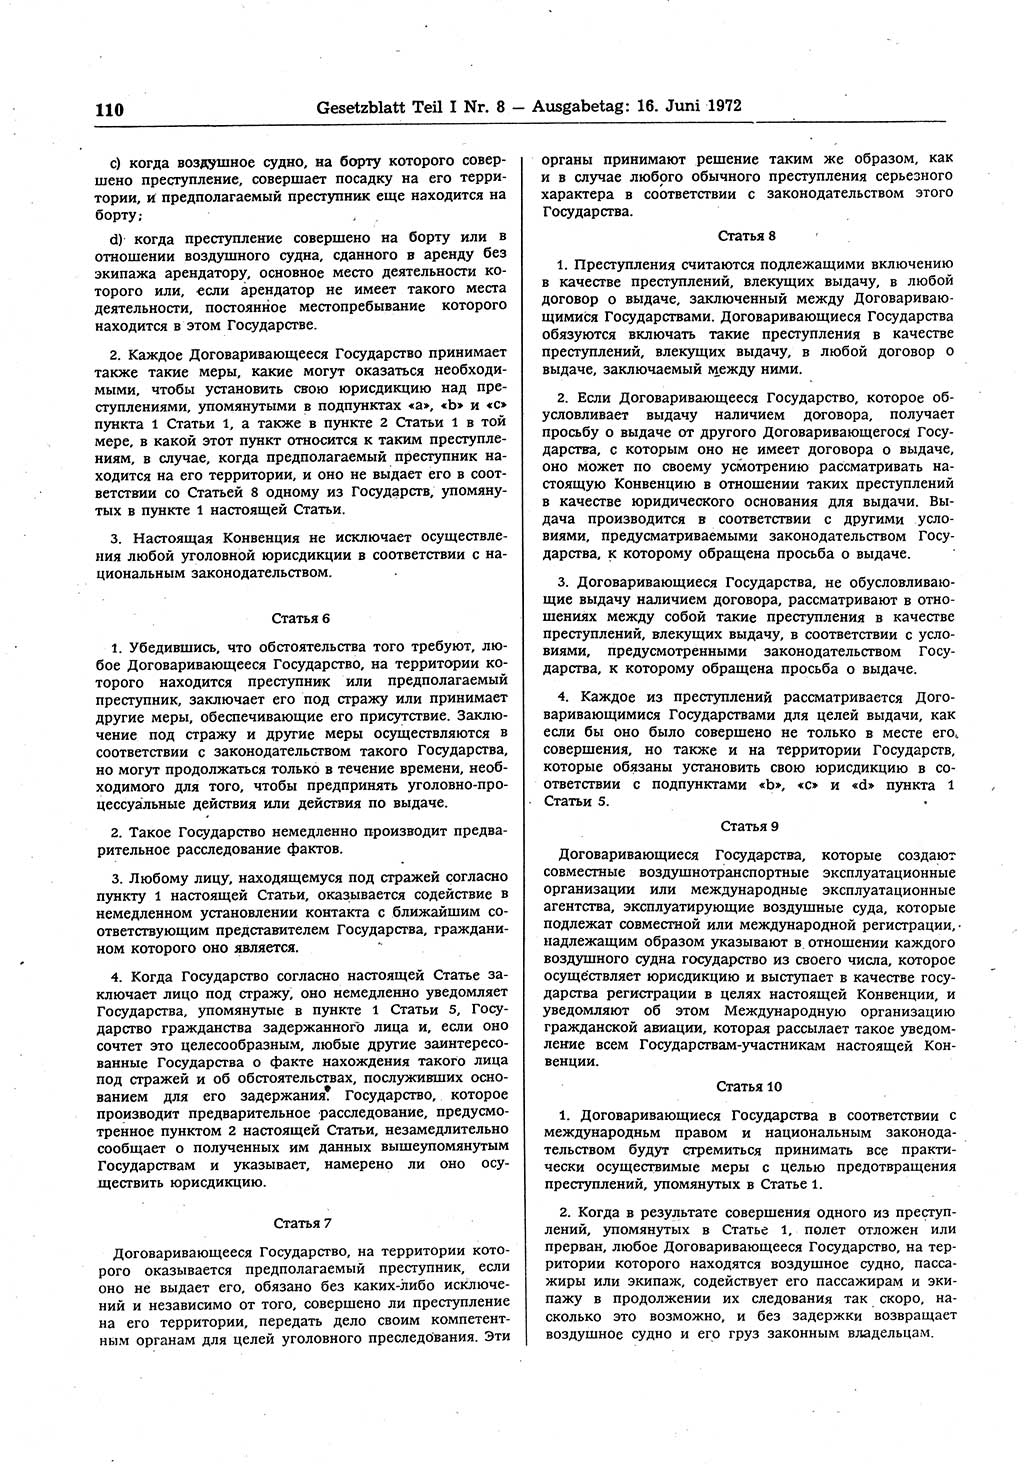 Gesetzblatt (GBl.) der Deutschen Demokratischen Republik (DDR) Teil Ⅰ 1972, Seite 110 (GBl. DDR Ⅰ 1972, S. 110)